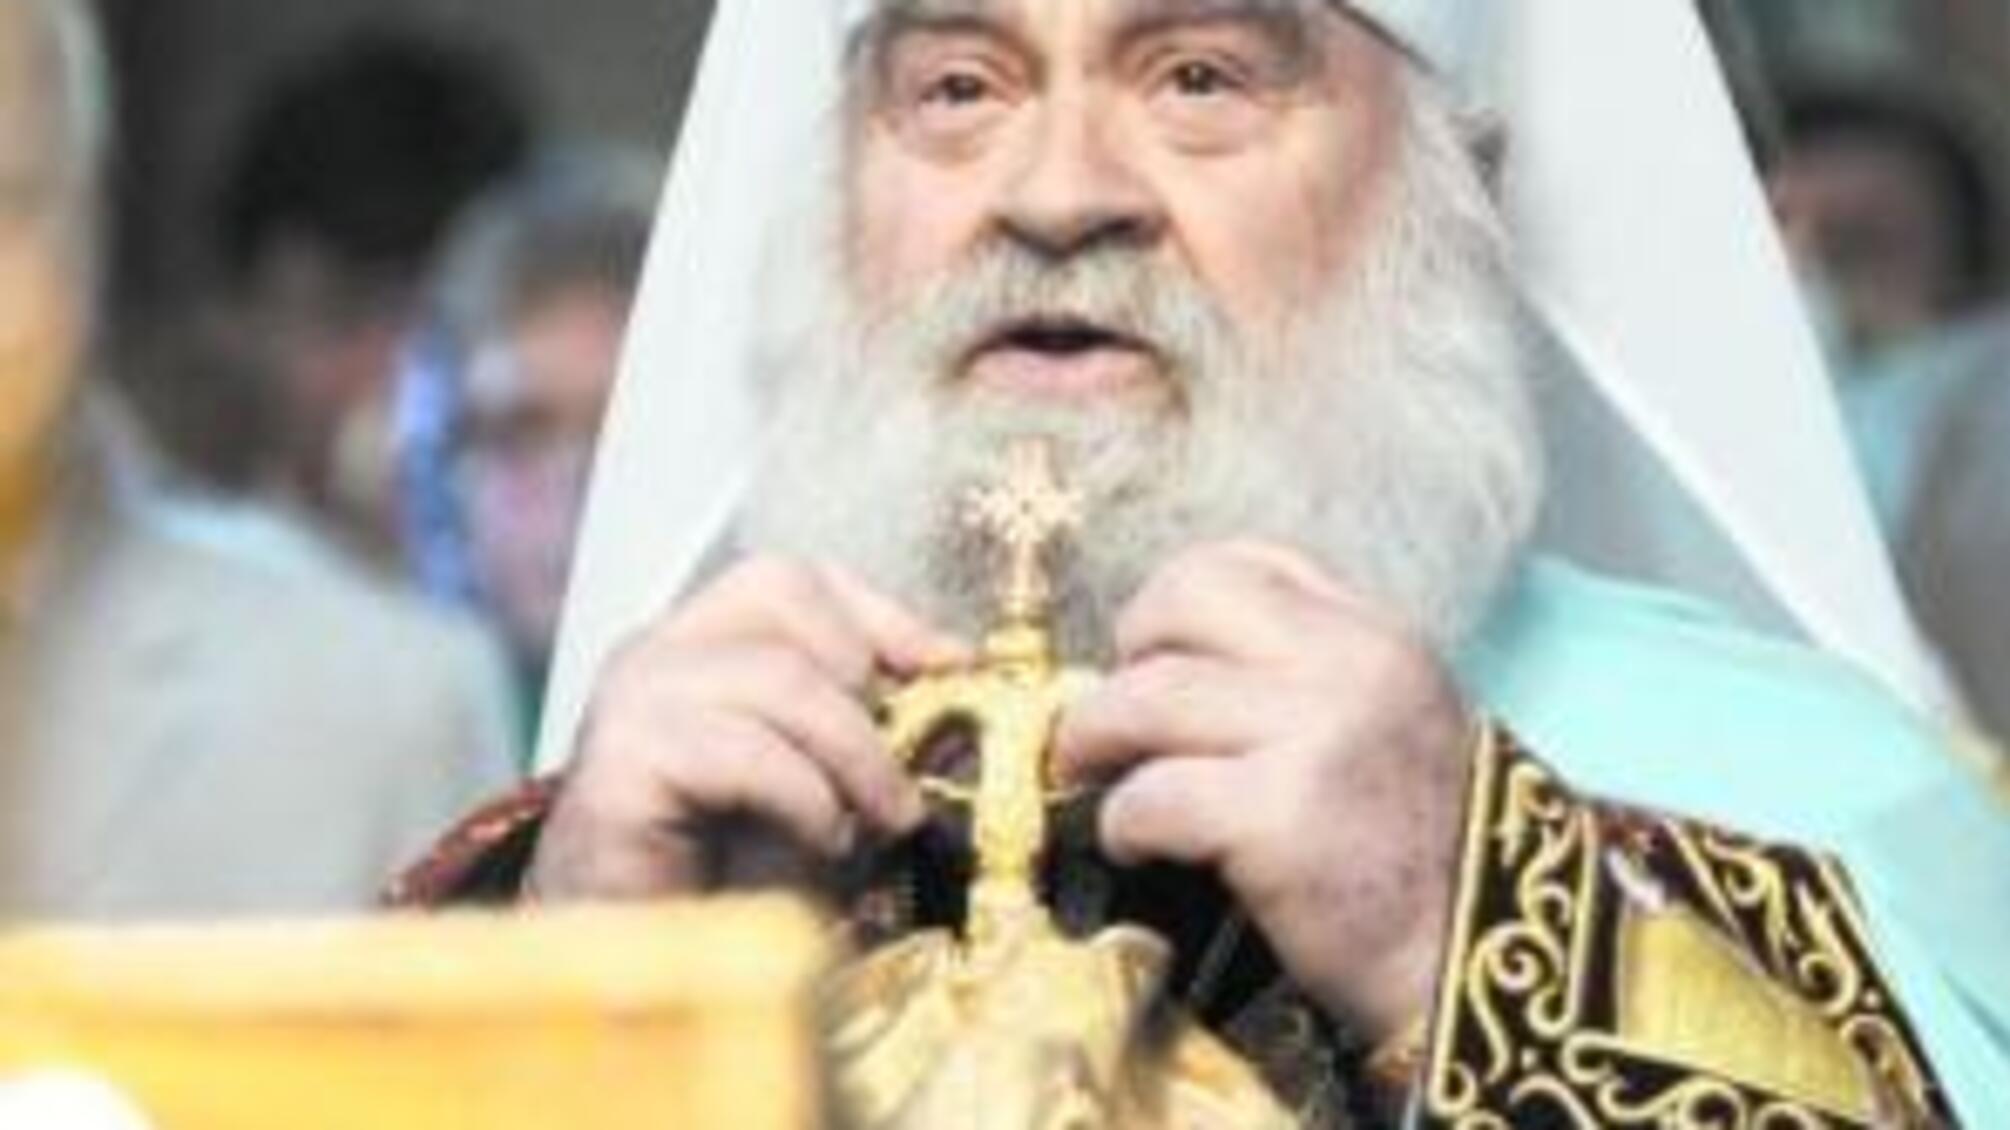 Митрополит Софроній: Дуже багато людей розчарувалися в патріархові Кирилі